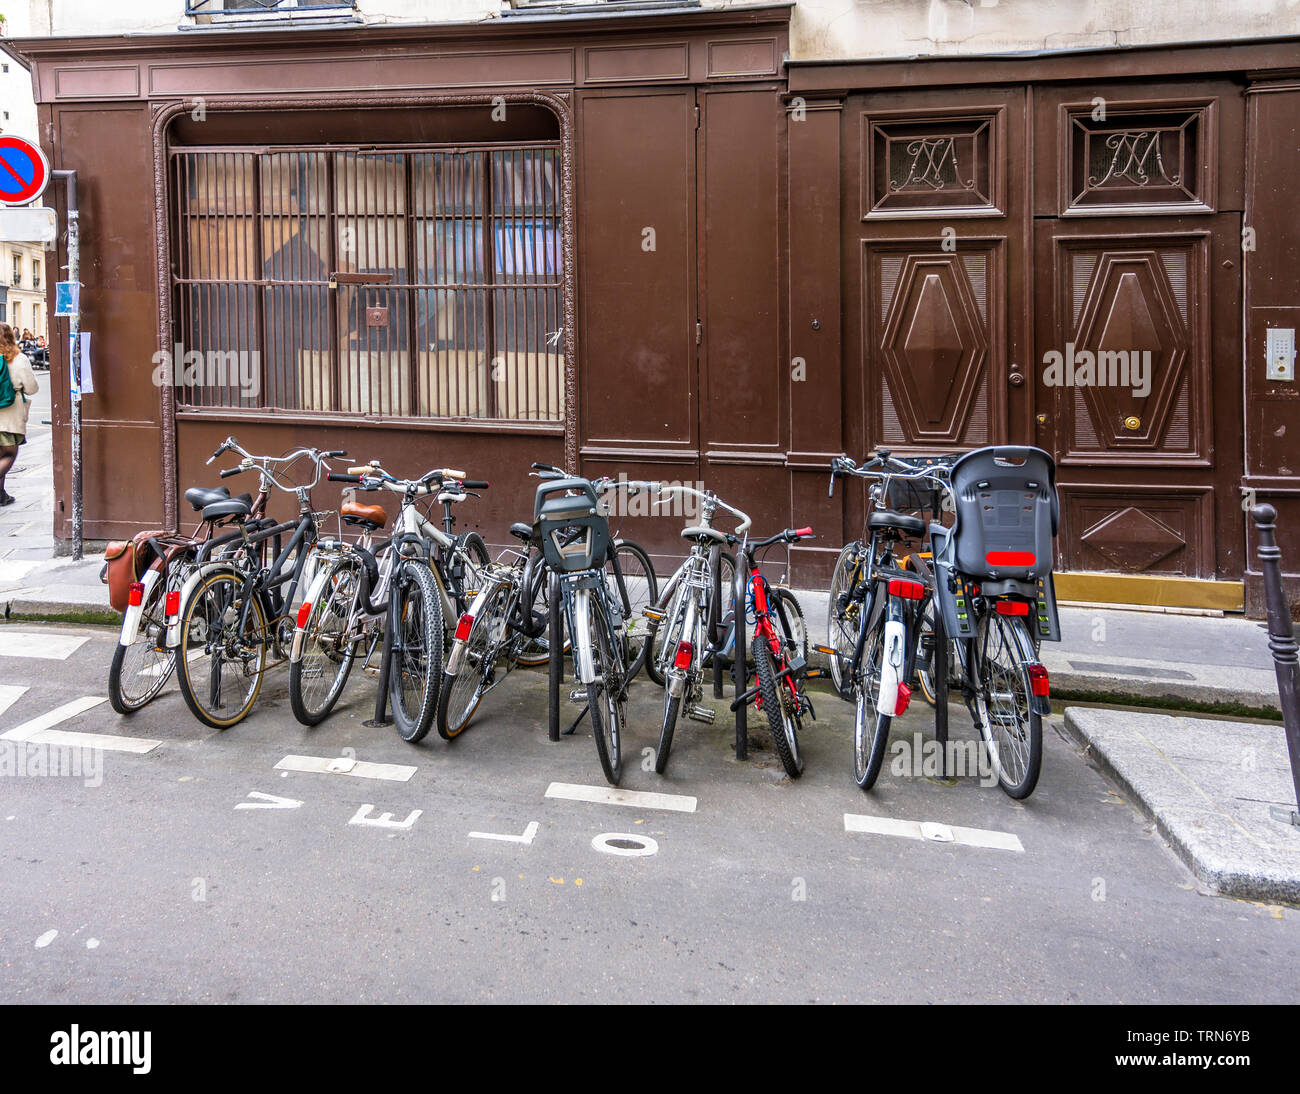 Bündel von verschiedenen Fahrräder der lokalen Pariser stehen entlang der alten Gebäude auf der Straße bereit für Radfahrer Fahrrad Reise zu jedem Punkt der alten seine zu nehmen Stockfoto